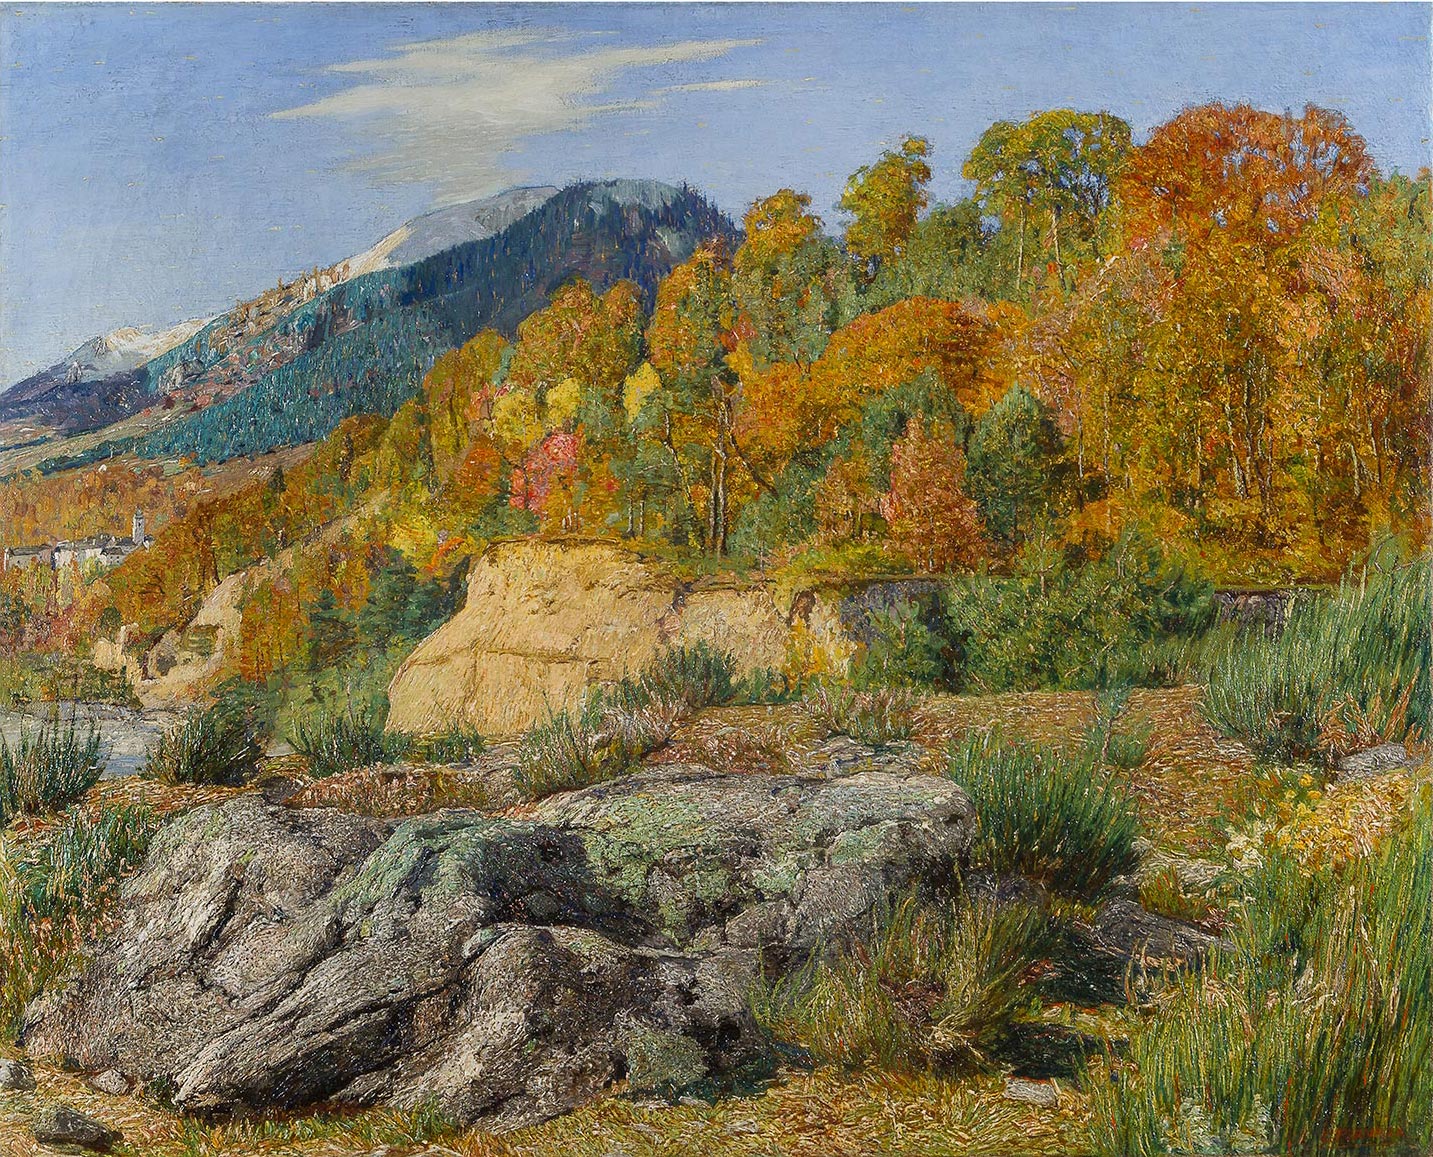 Carlo Fornara, Splendori di ottobre, 1897, olio su tela, 78x98 cm - Collezione Privata